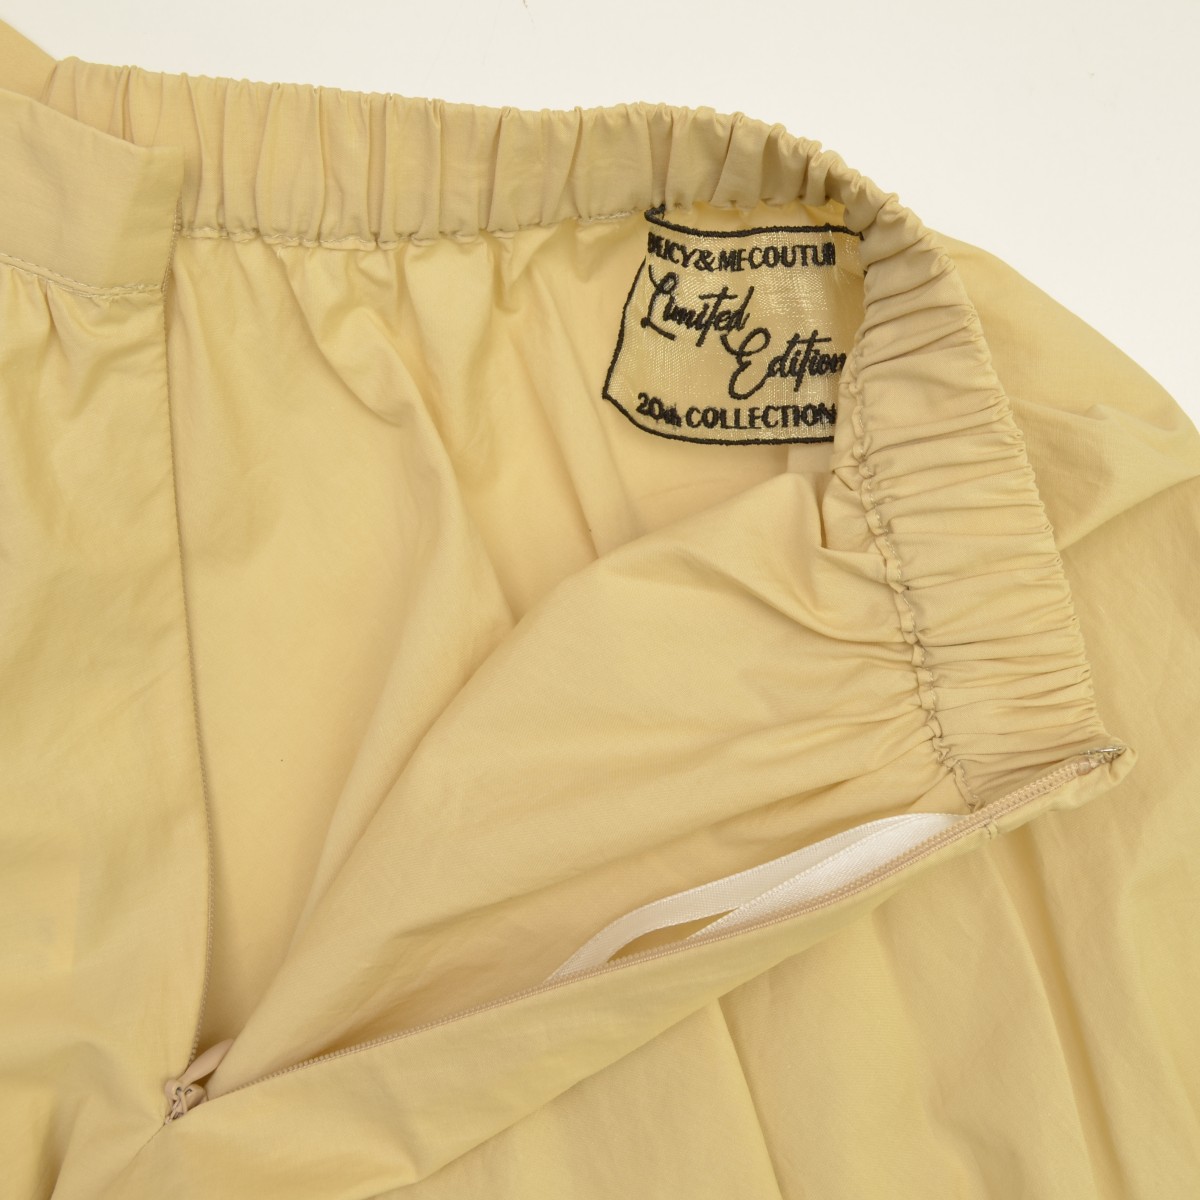 deicy / デイシー 20th ボリュームギャザースカート スカート -ブランド古着の買取販売カンフル